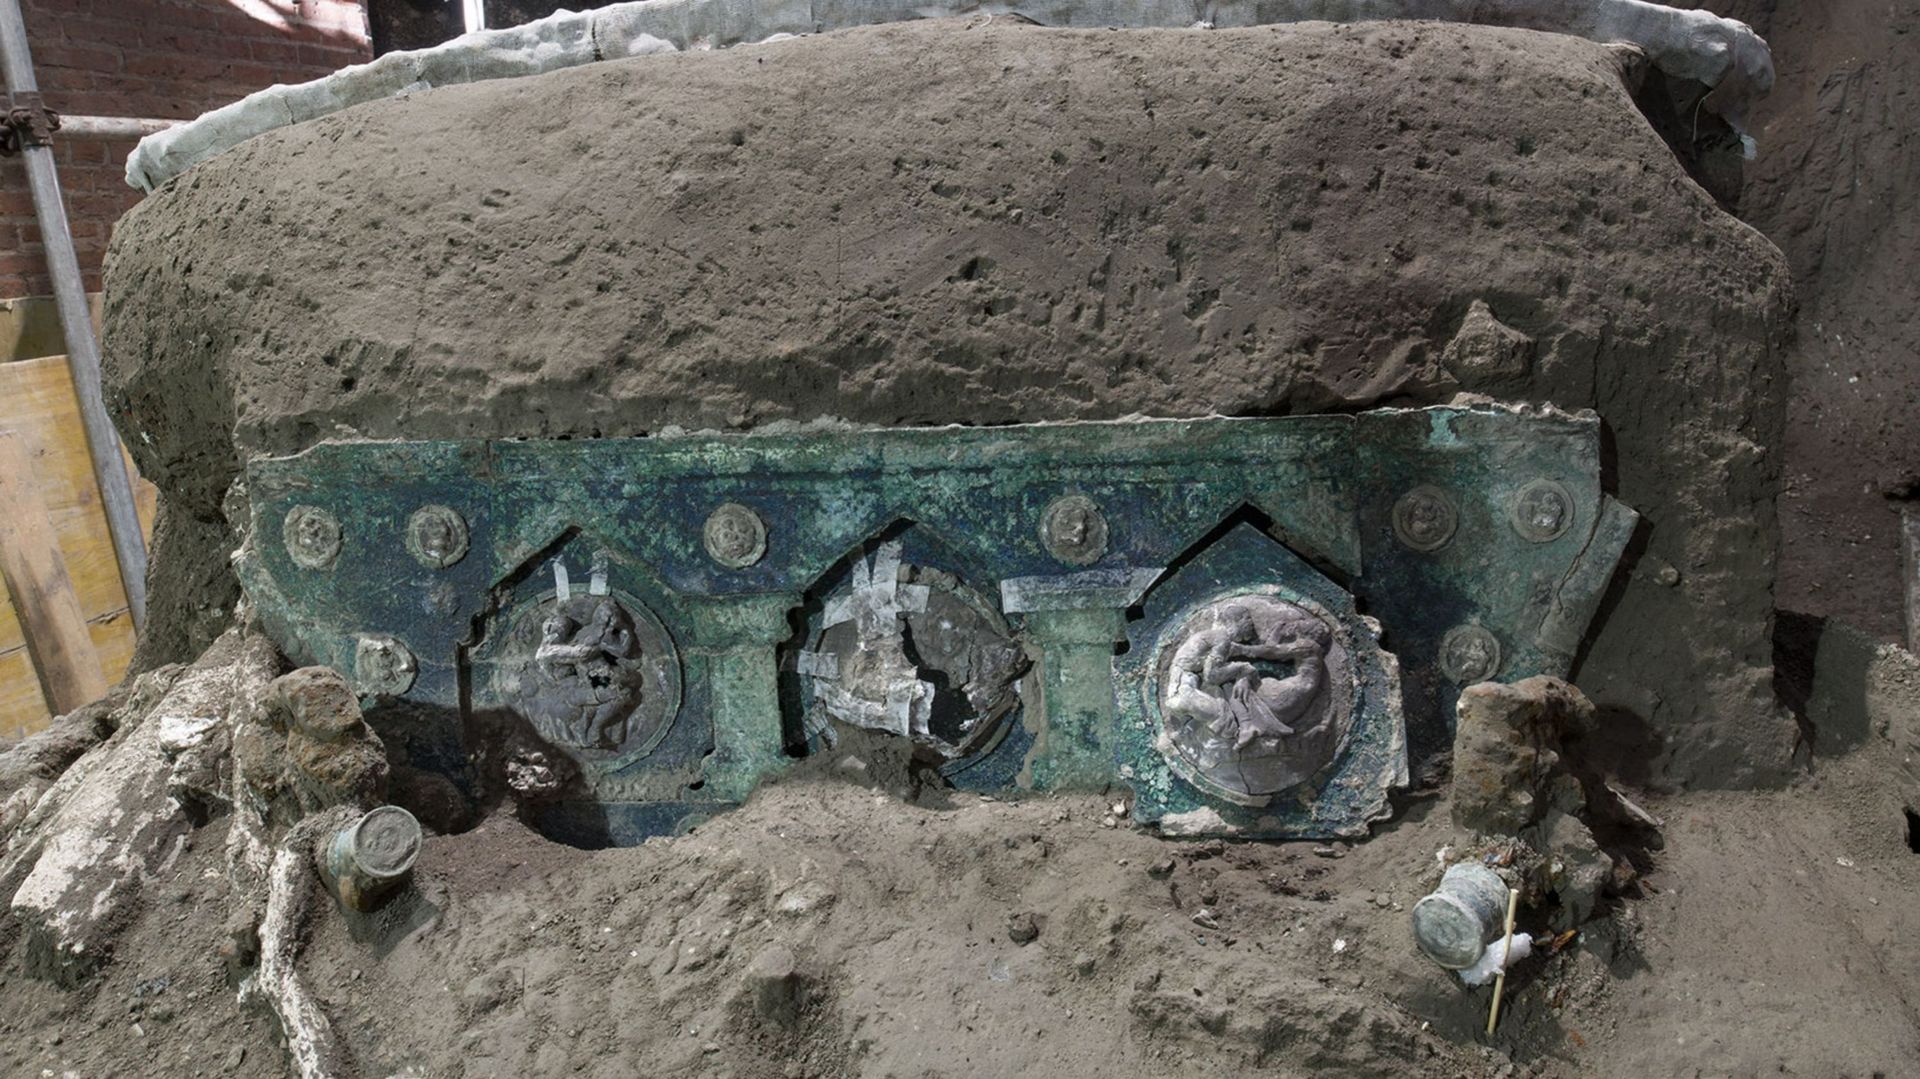 Un char de cérémonie de l’époque romaine retrouvé près de Pompéi